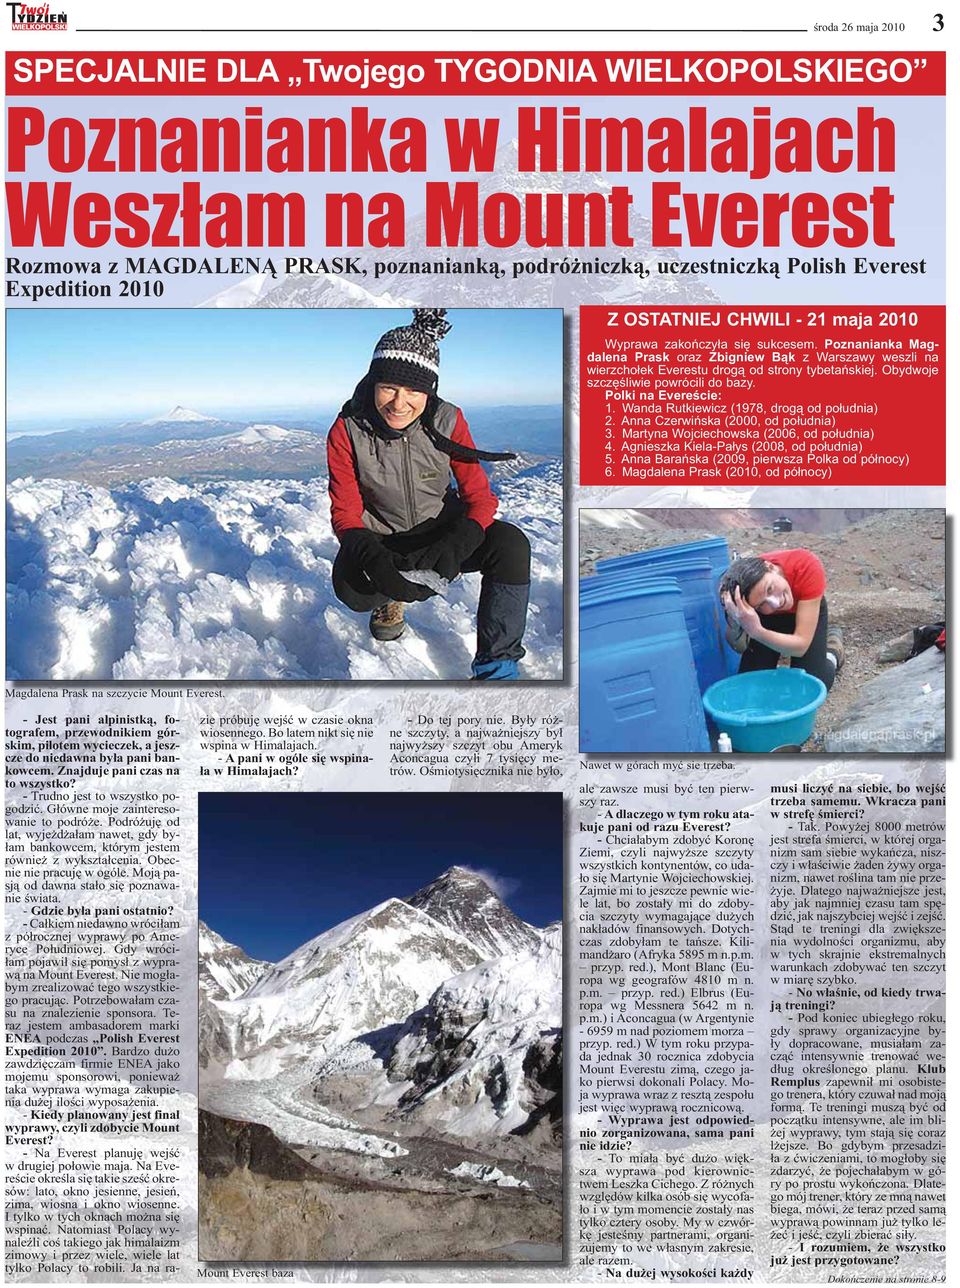 Poznanianka Magdalena Prask oraz Zbigniew Bąk z Warszawy weszli na wierzchołek Everestu drogą od strony tybetańskiej. Obydwoje szczęśliwie powrócili do bazy. Polki na Evereście: 1.